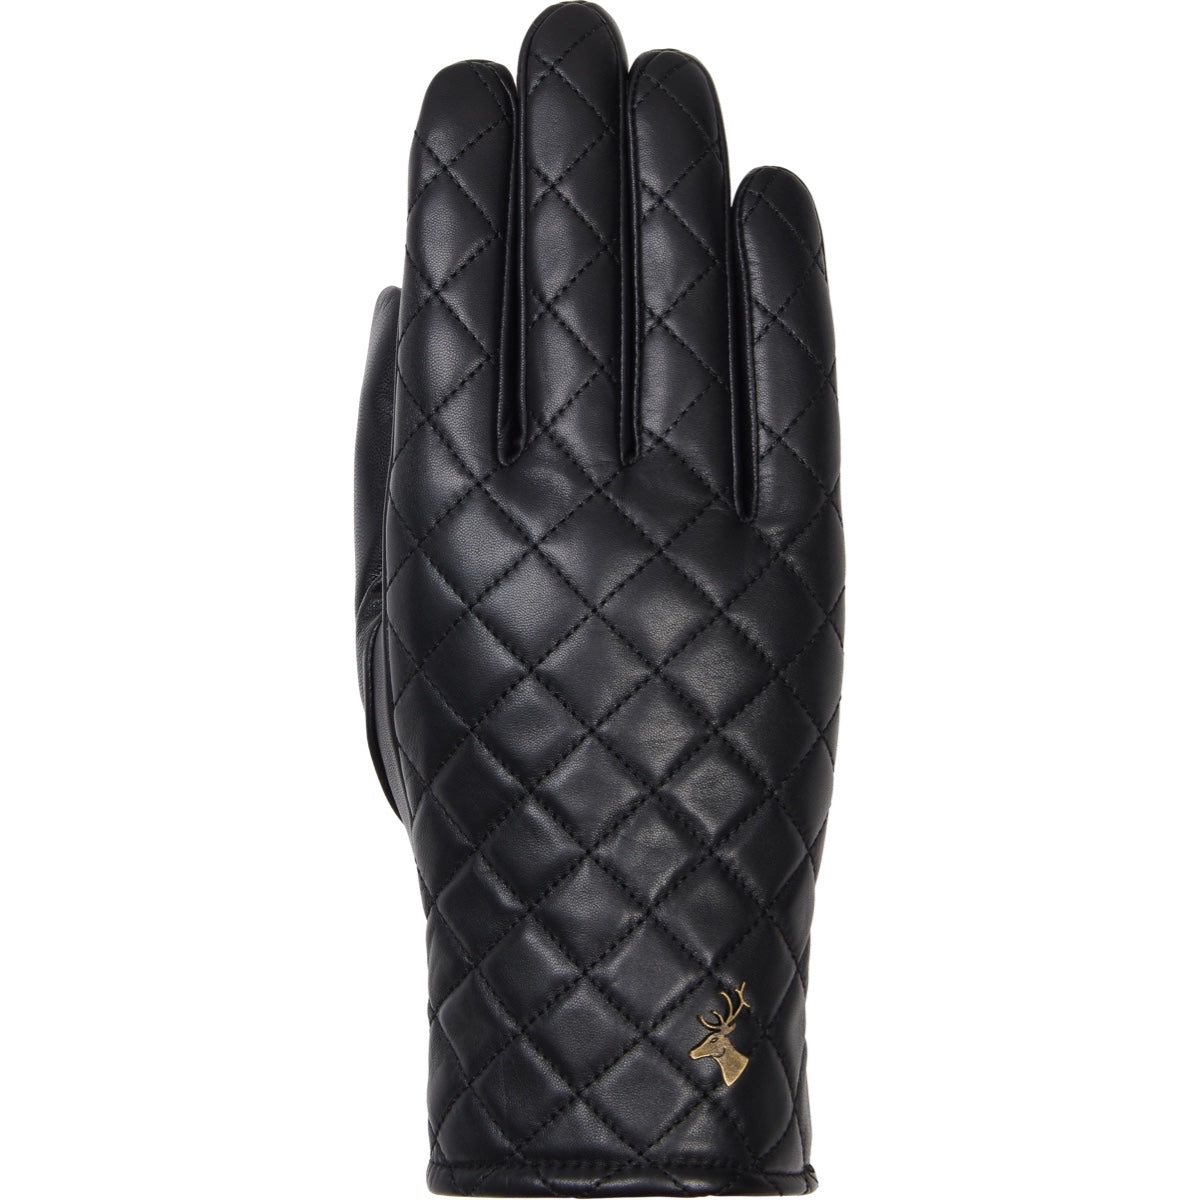 Black Leather Gloves Women Kira - Schwartz & von Halen® - Premium Leather Gloves - 1